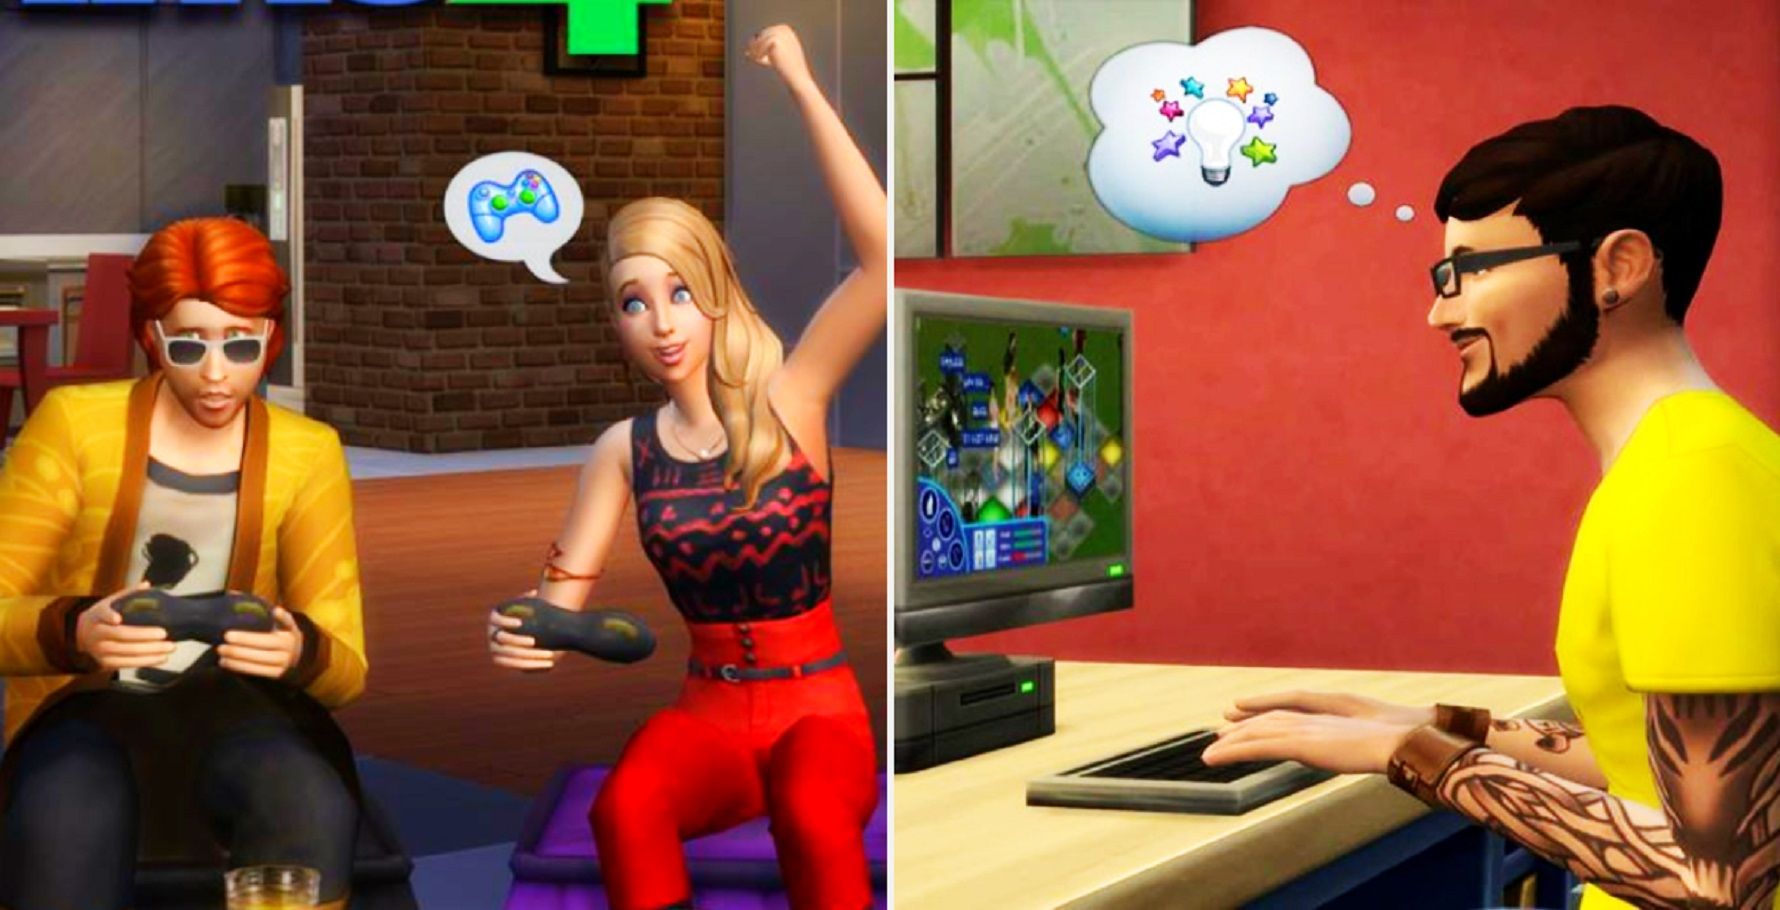 Sims 4 PC vs Console